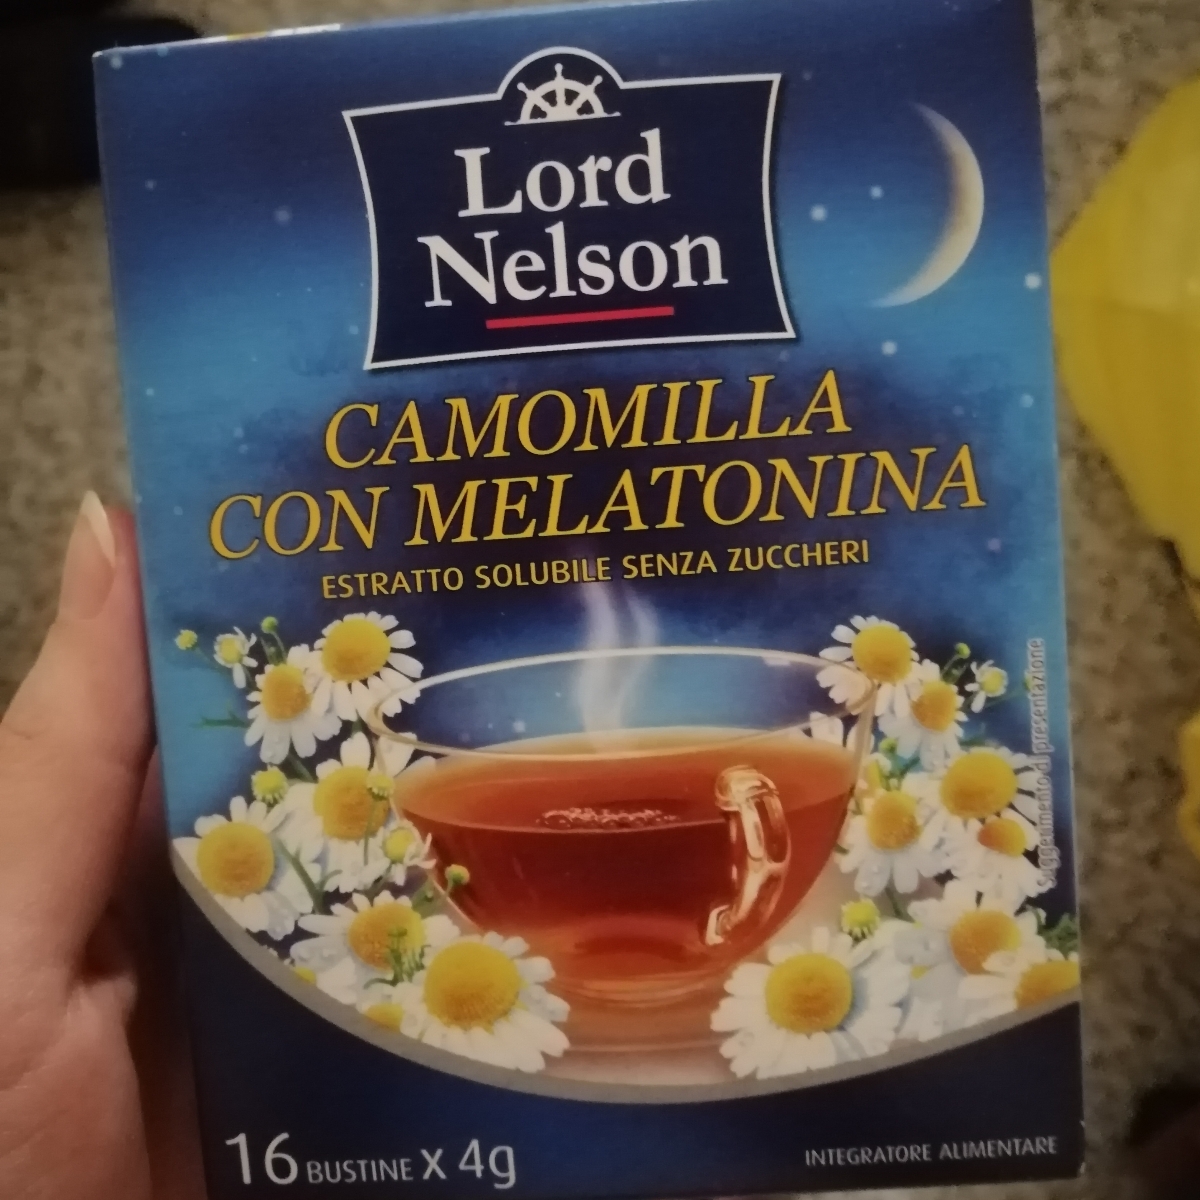 Lord Nelson camomilla con melatonina Review | abillion